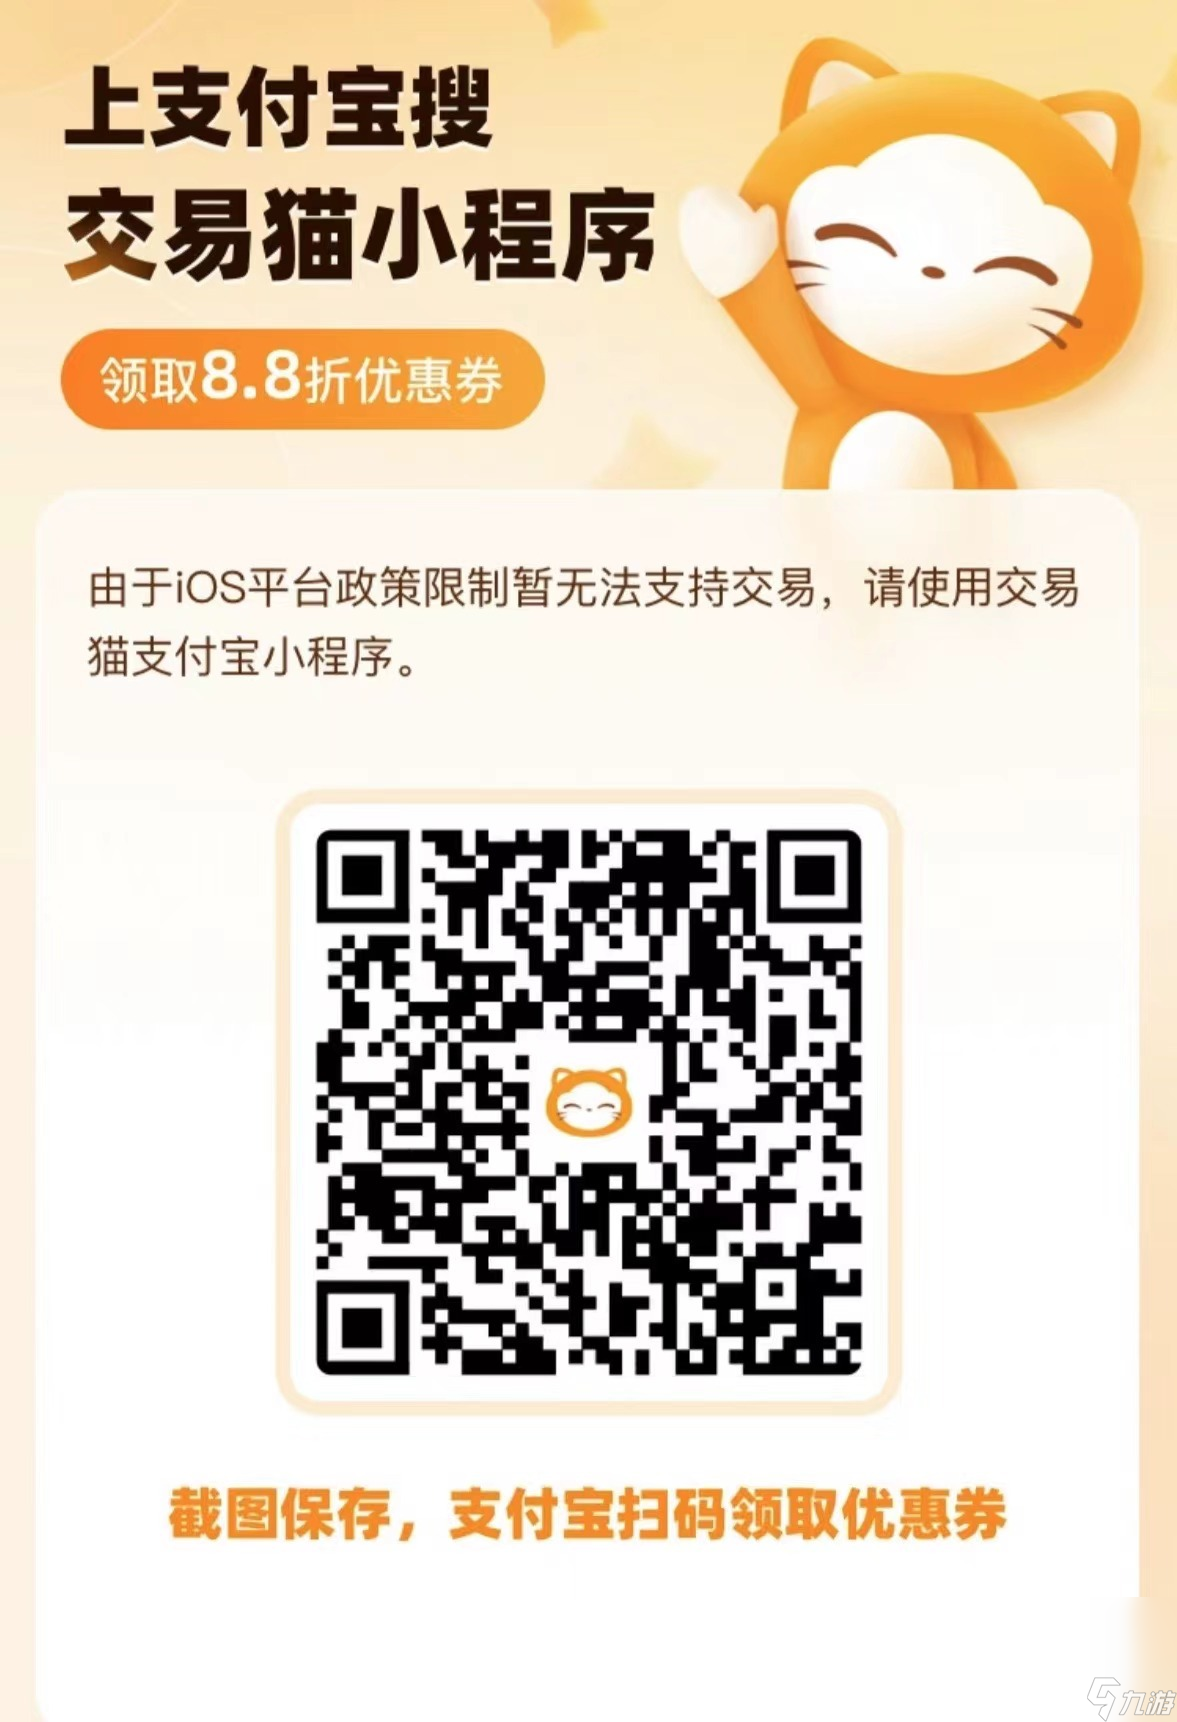 仙剑奇侠传3D回合买号平台app哪个好 靠谱的游戏账号交易平台推荐